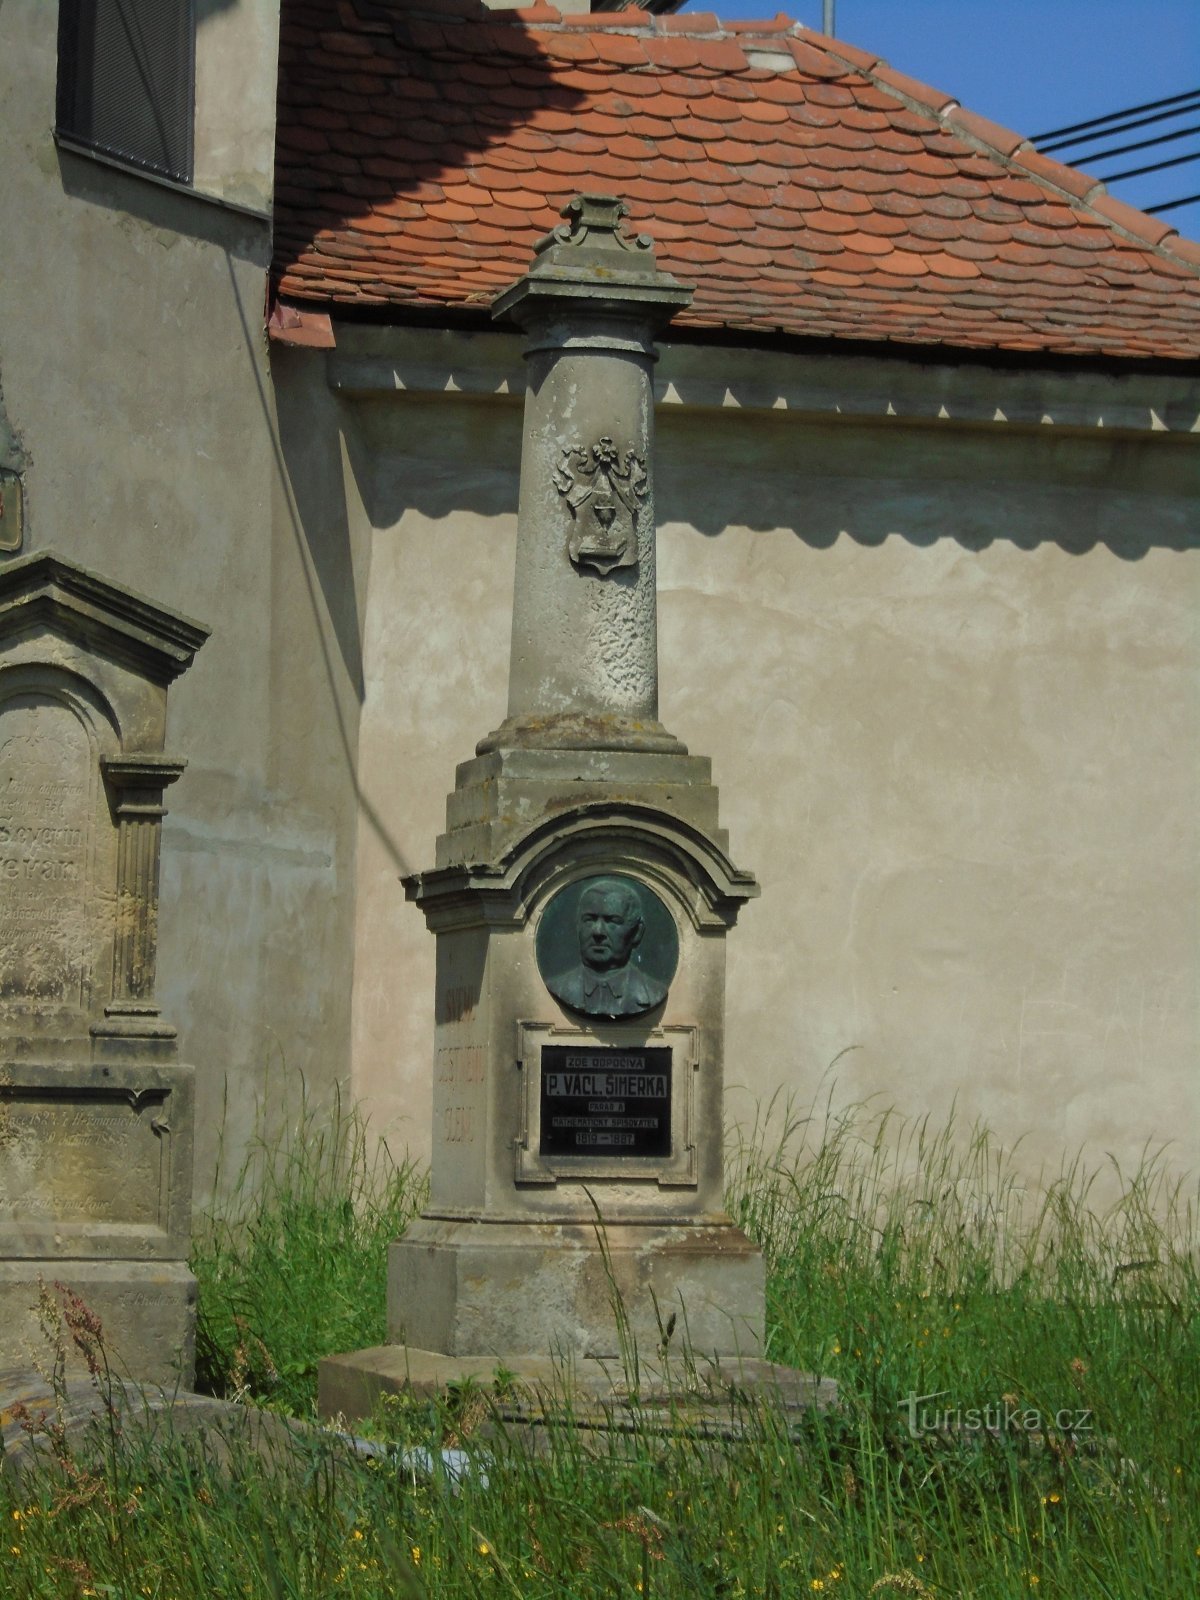 Spomenik P. Václav Šimerk (Praskačka)